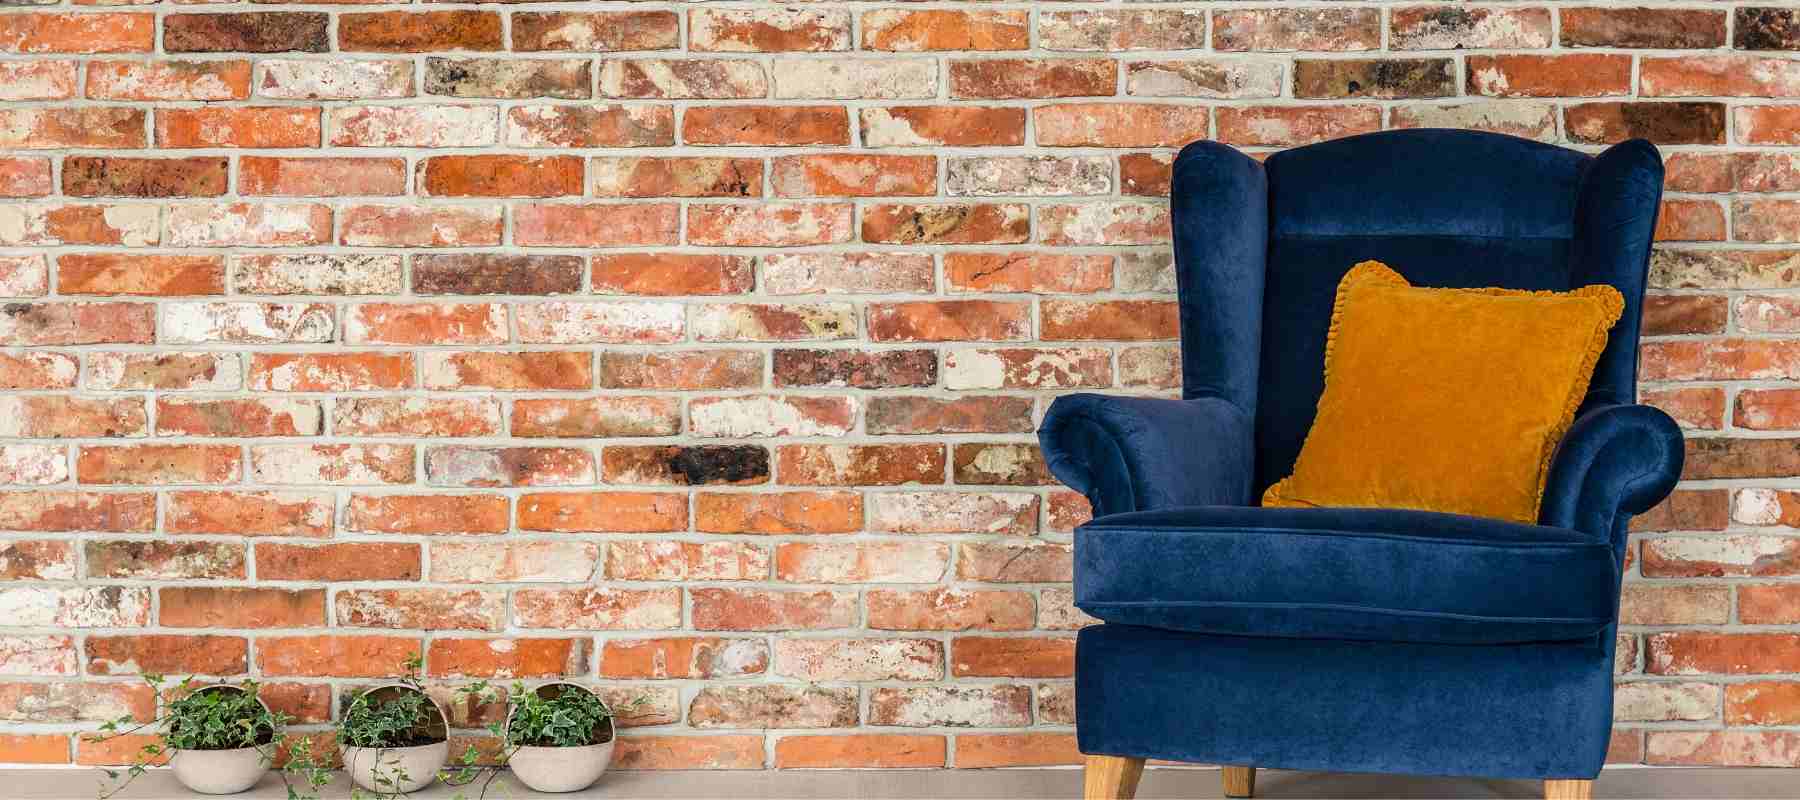 Blue velvet winged back armchair against brick wall